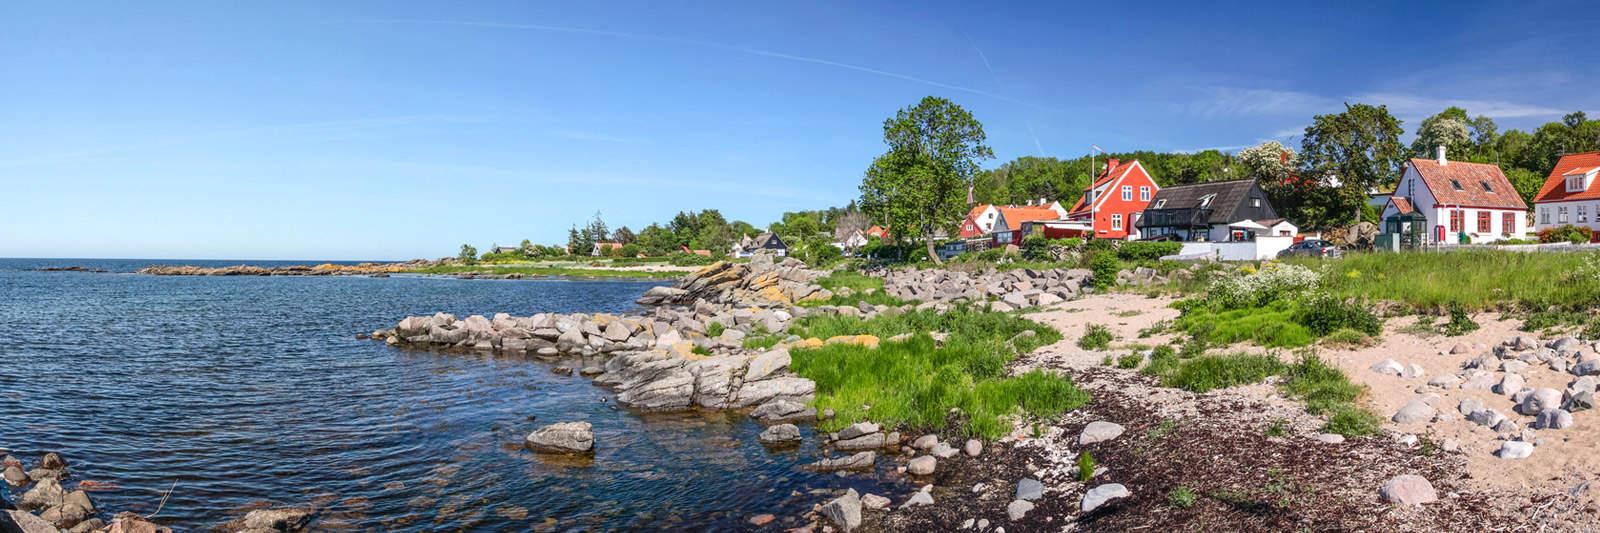 32 Ferienwohnungen und Ferienhäuser in Holbæk - tourist-online.de